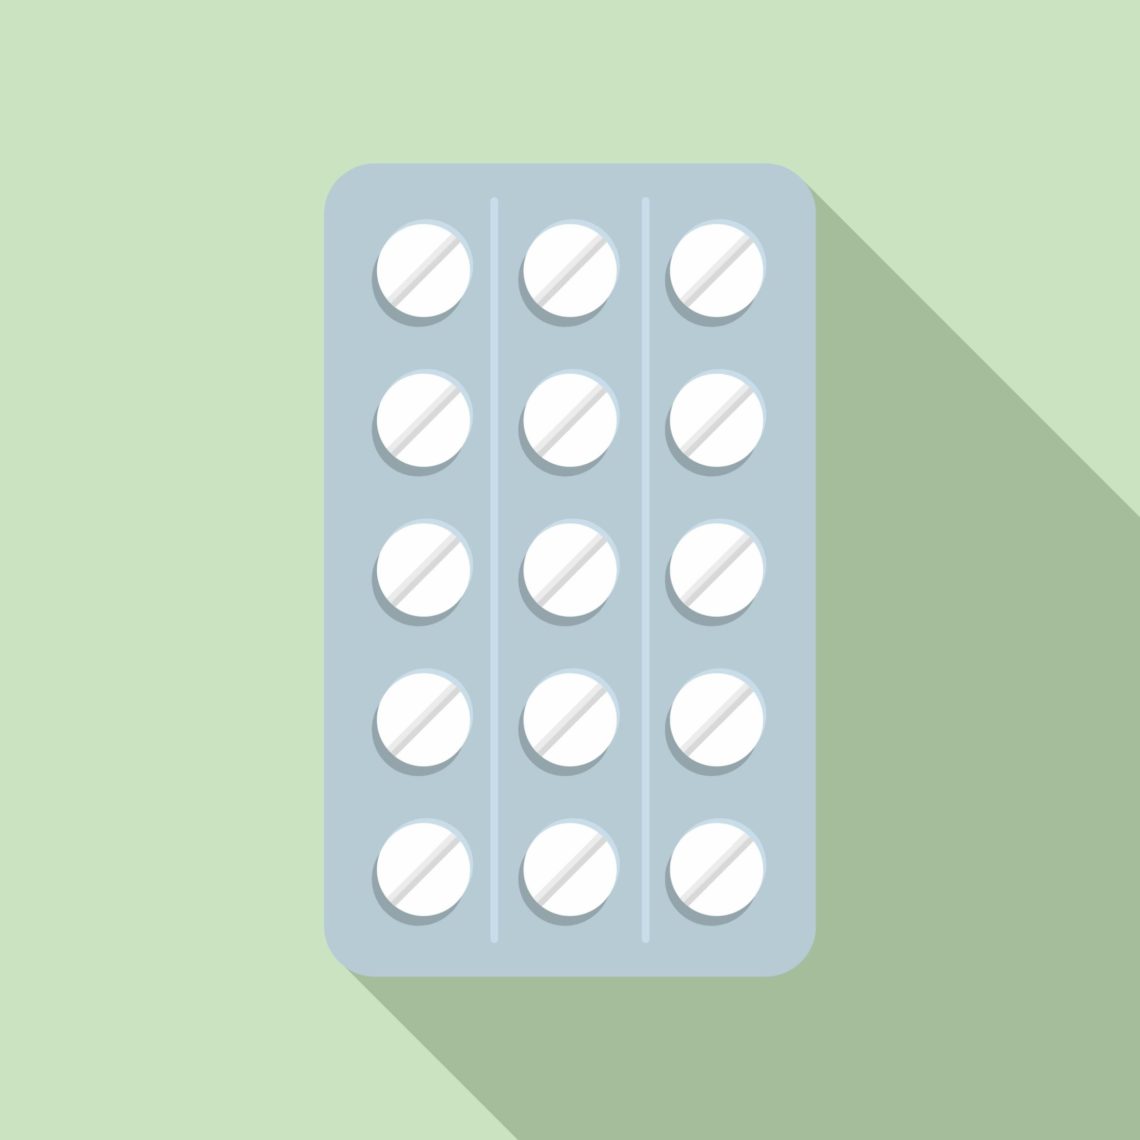 The Oral Contraceptive pill Contraceptive Method